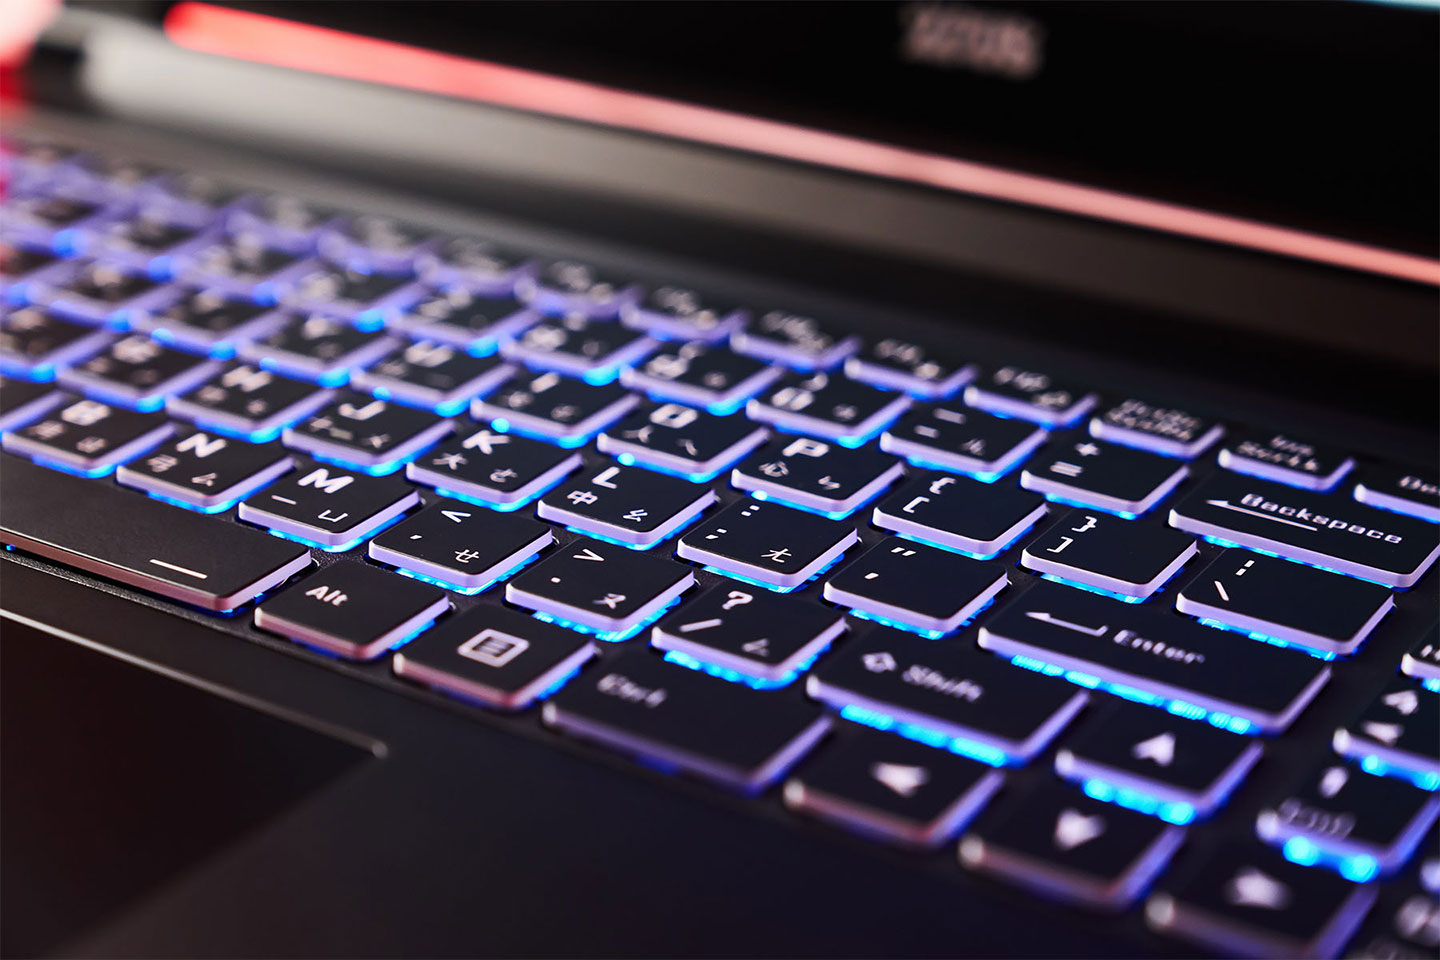 鍵盤的鍵帽四週為半透明設計，加上 15 色多彩背光，可多段調整亮度的功能，更能帶來更好 RGB 燈光效果。